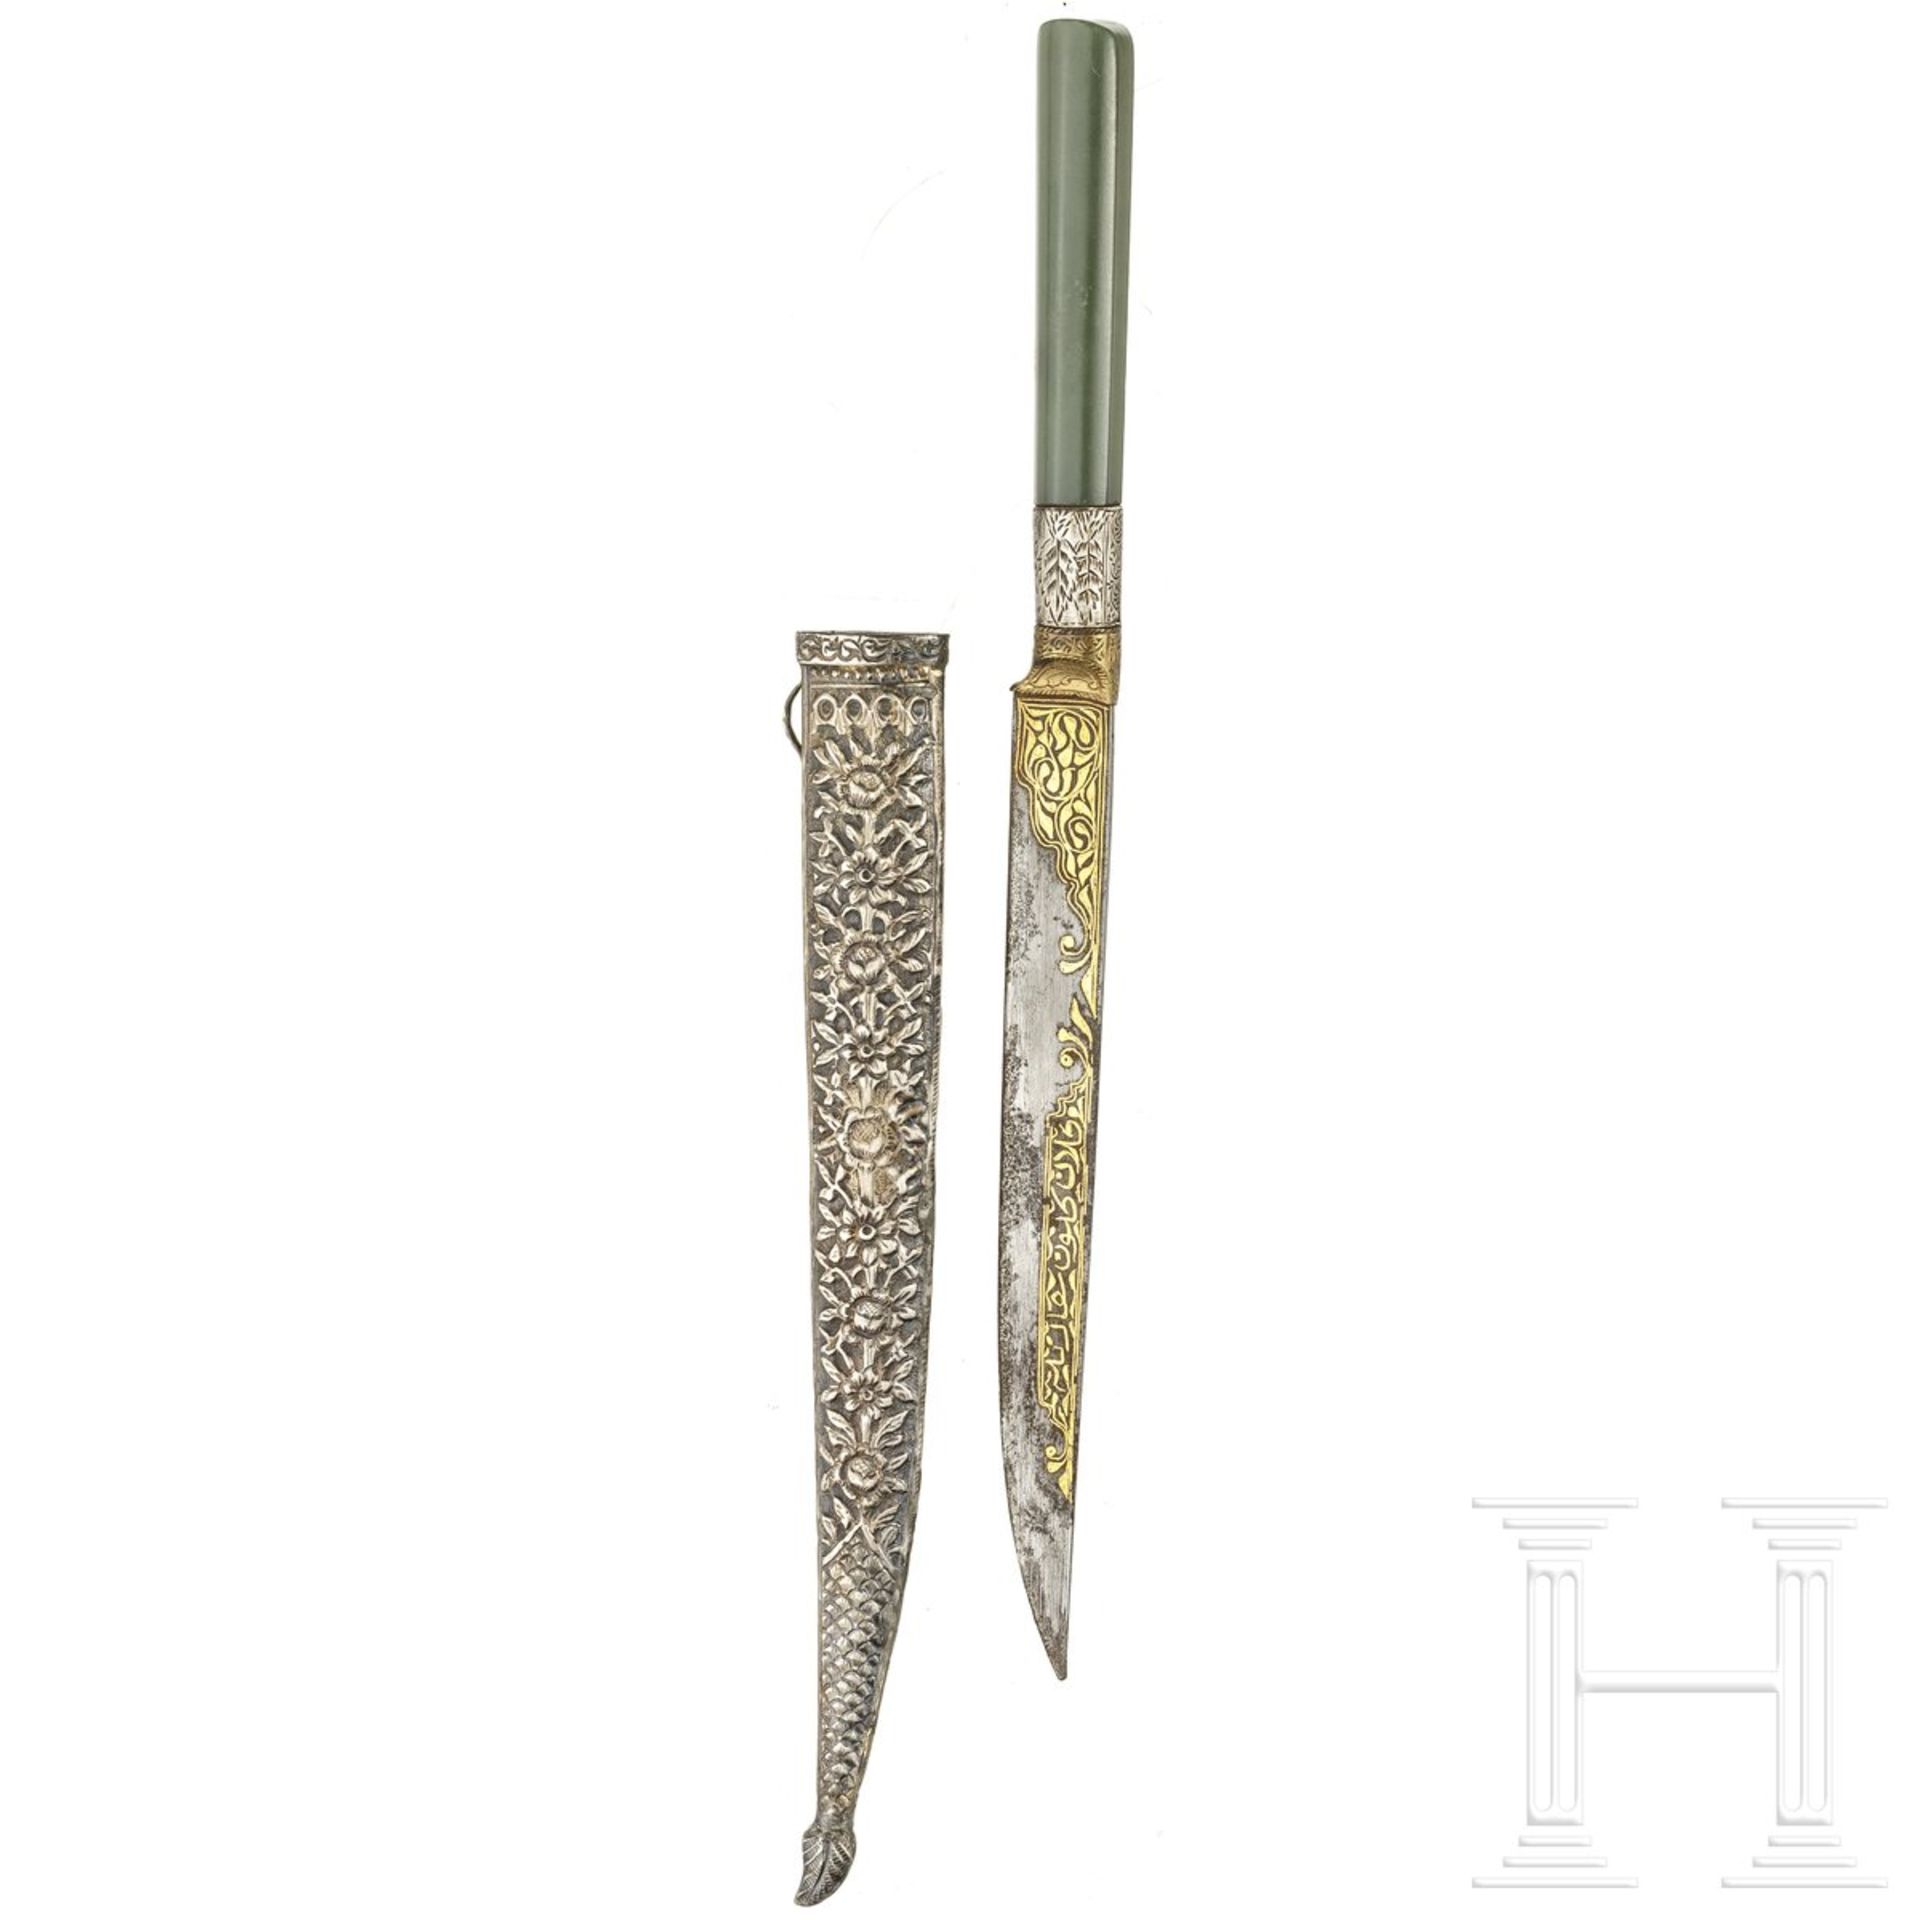 Kleines goldtauschiertes Messer mit Nephritgriff, osmanisch, um 1800 - Image 2 of 3